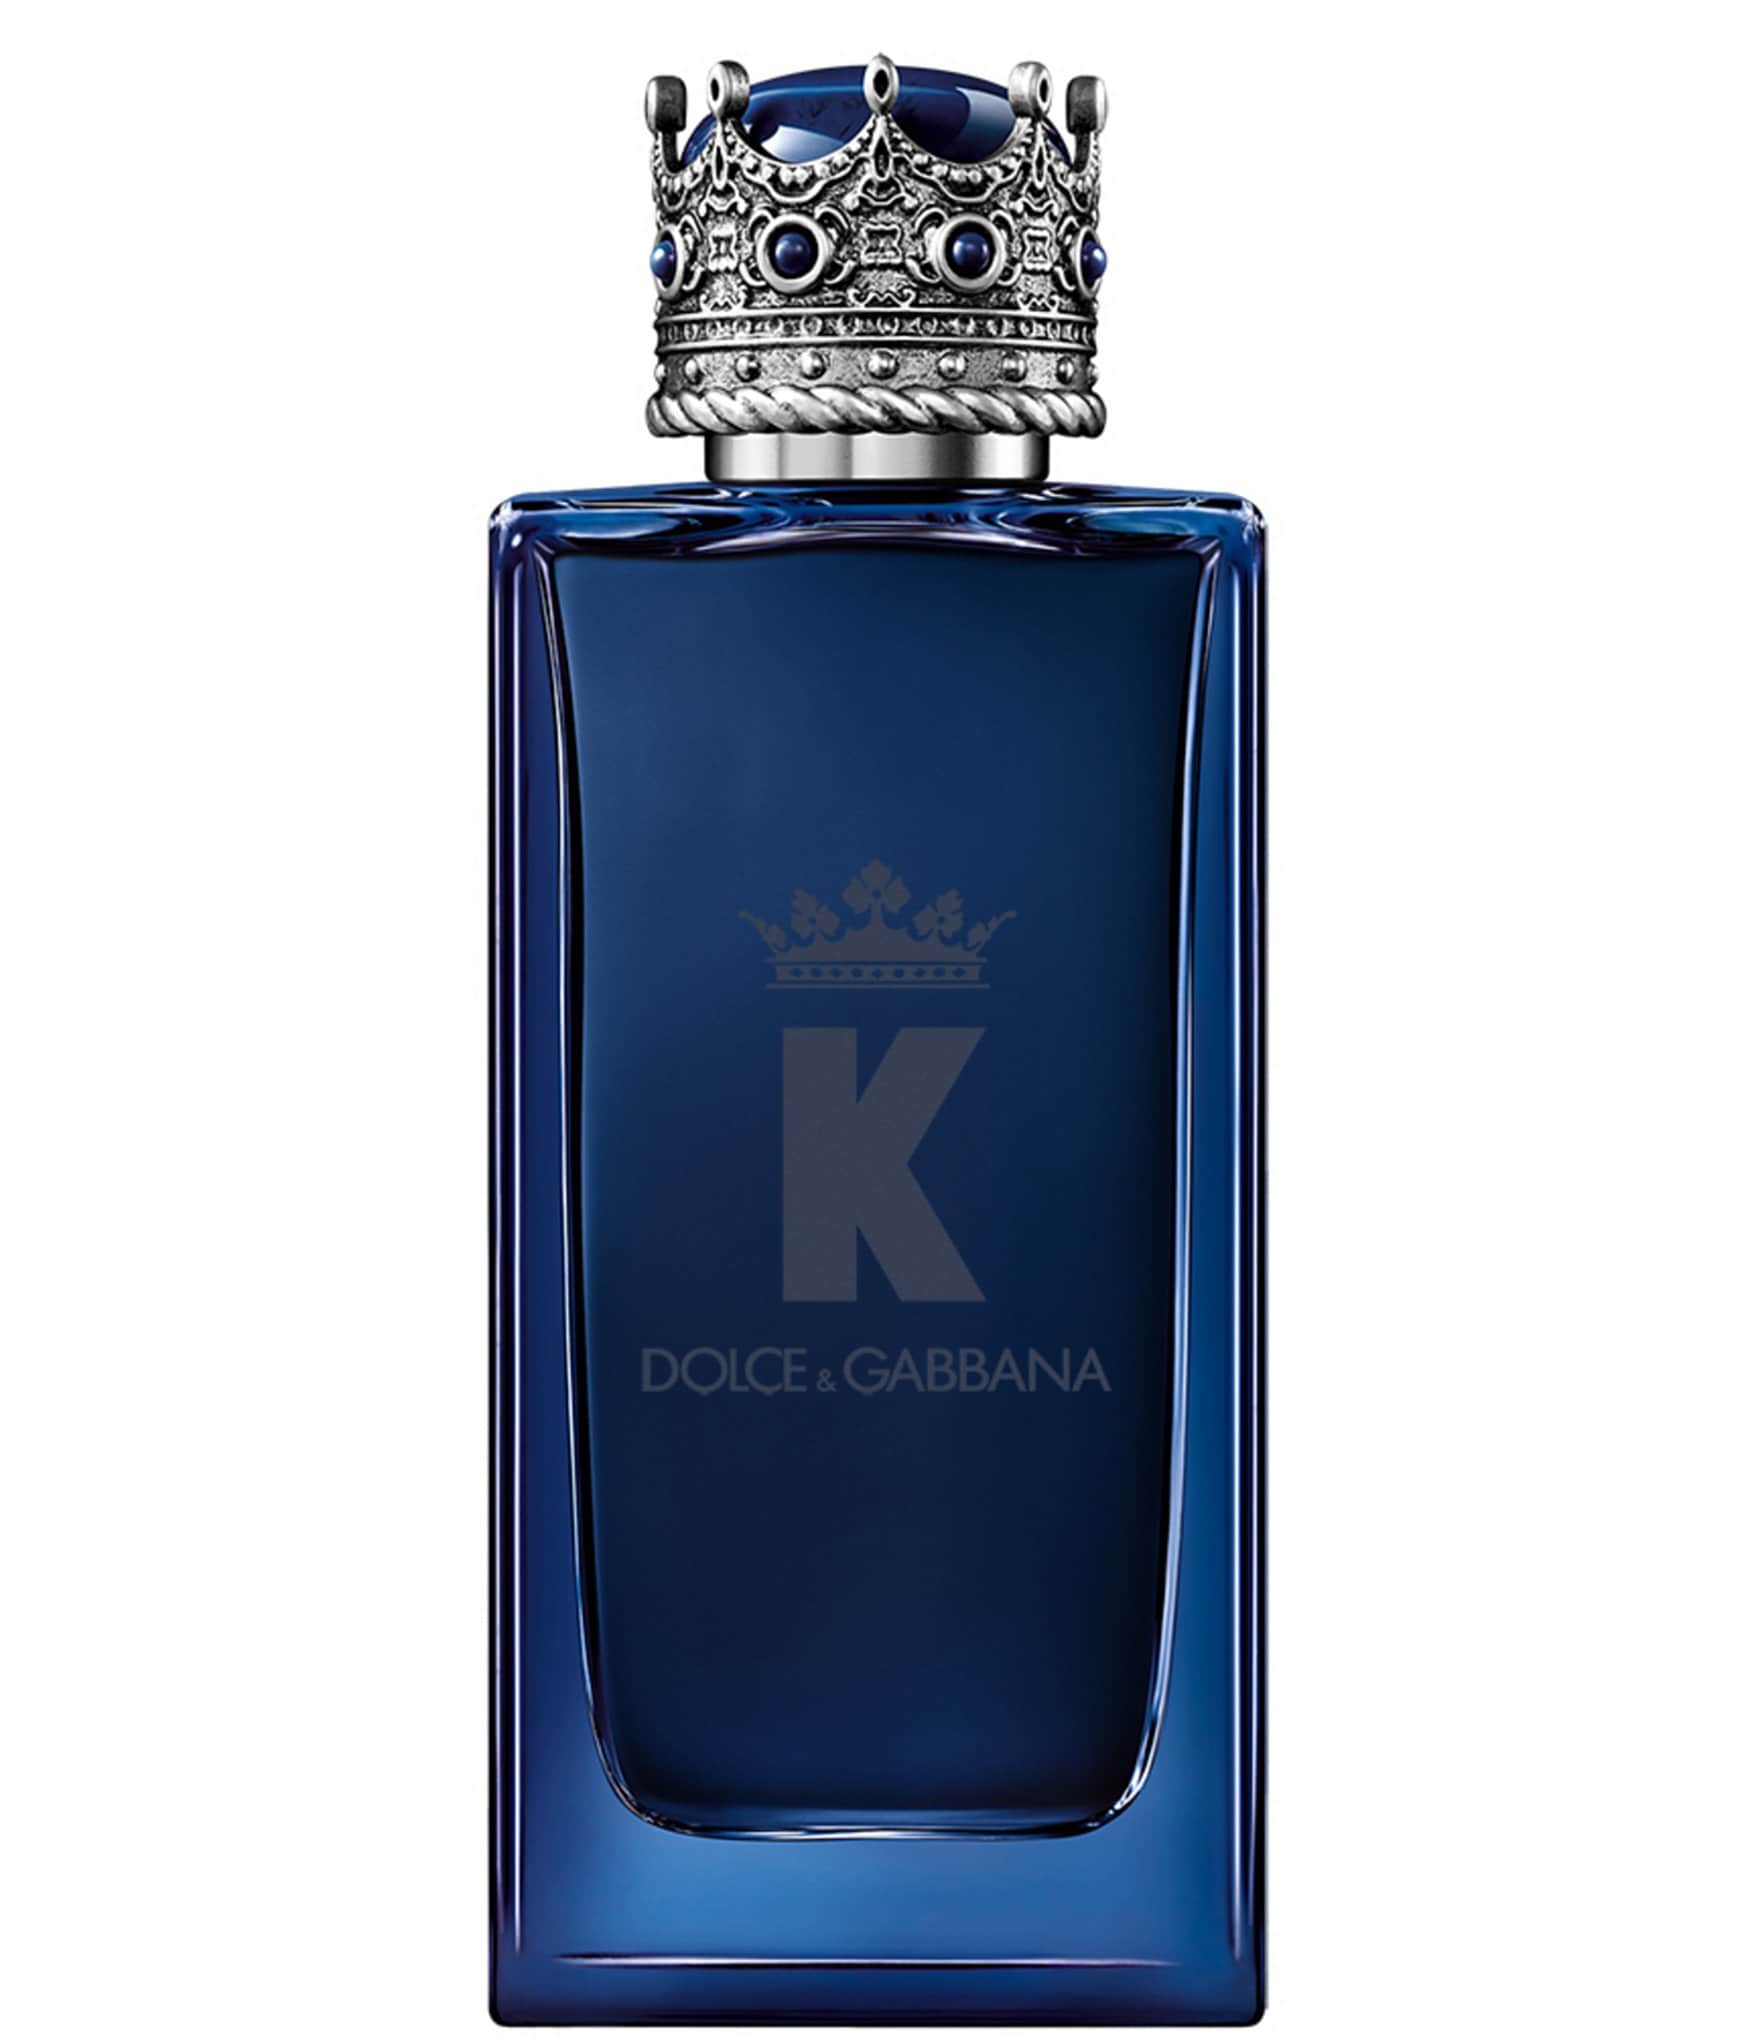 Dolce & Gabbana K Eau de Parfum Intense | Dillard's